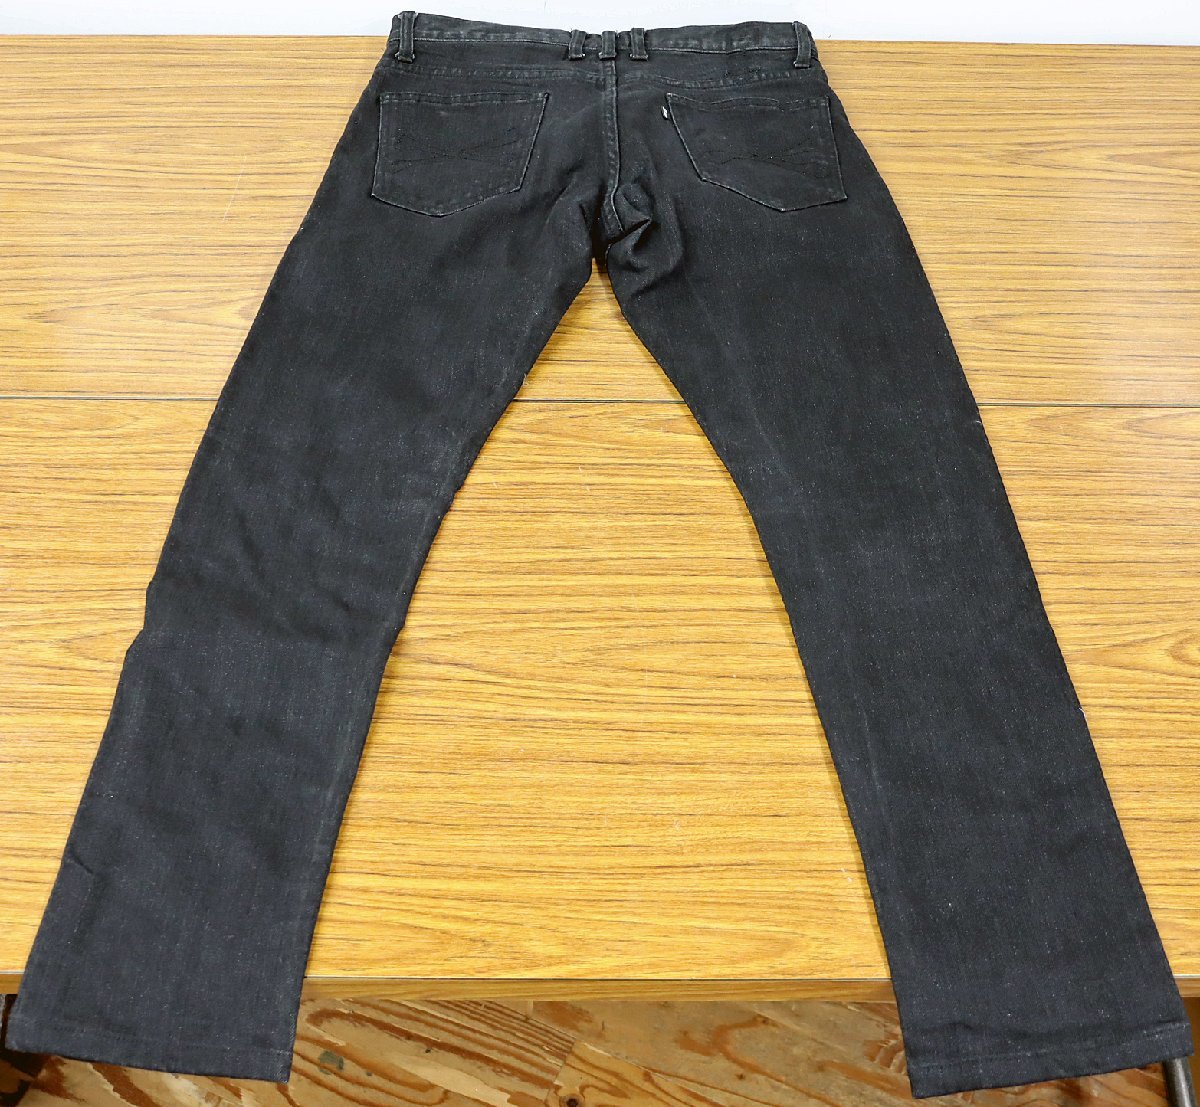 S 中古品 デニム 『roen jeans/ロエン ジーンズ』 サイズ 31 カラー ブラック/黒 コットン98% ポリウレタン2% ジーパン/長ズボン